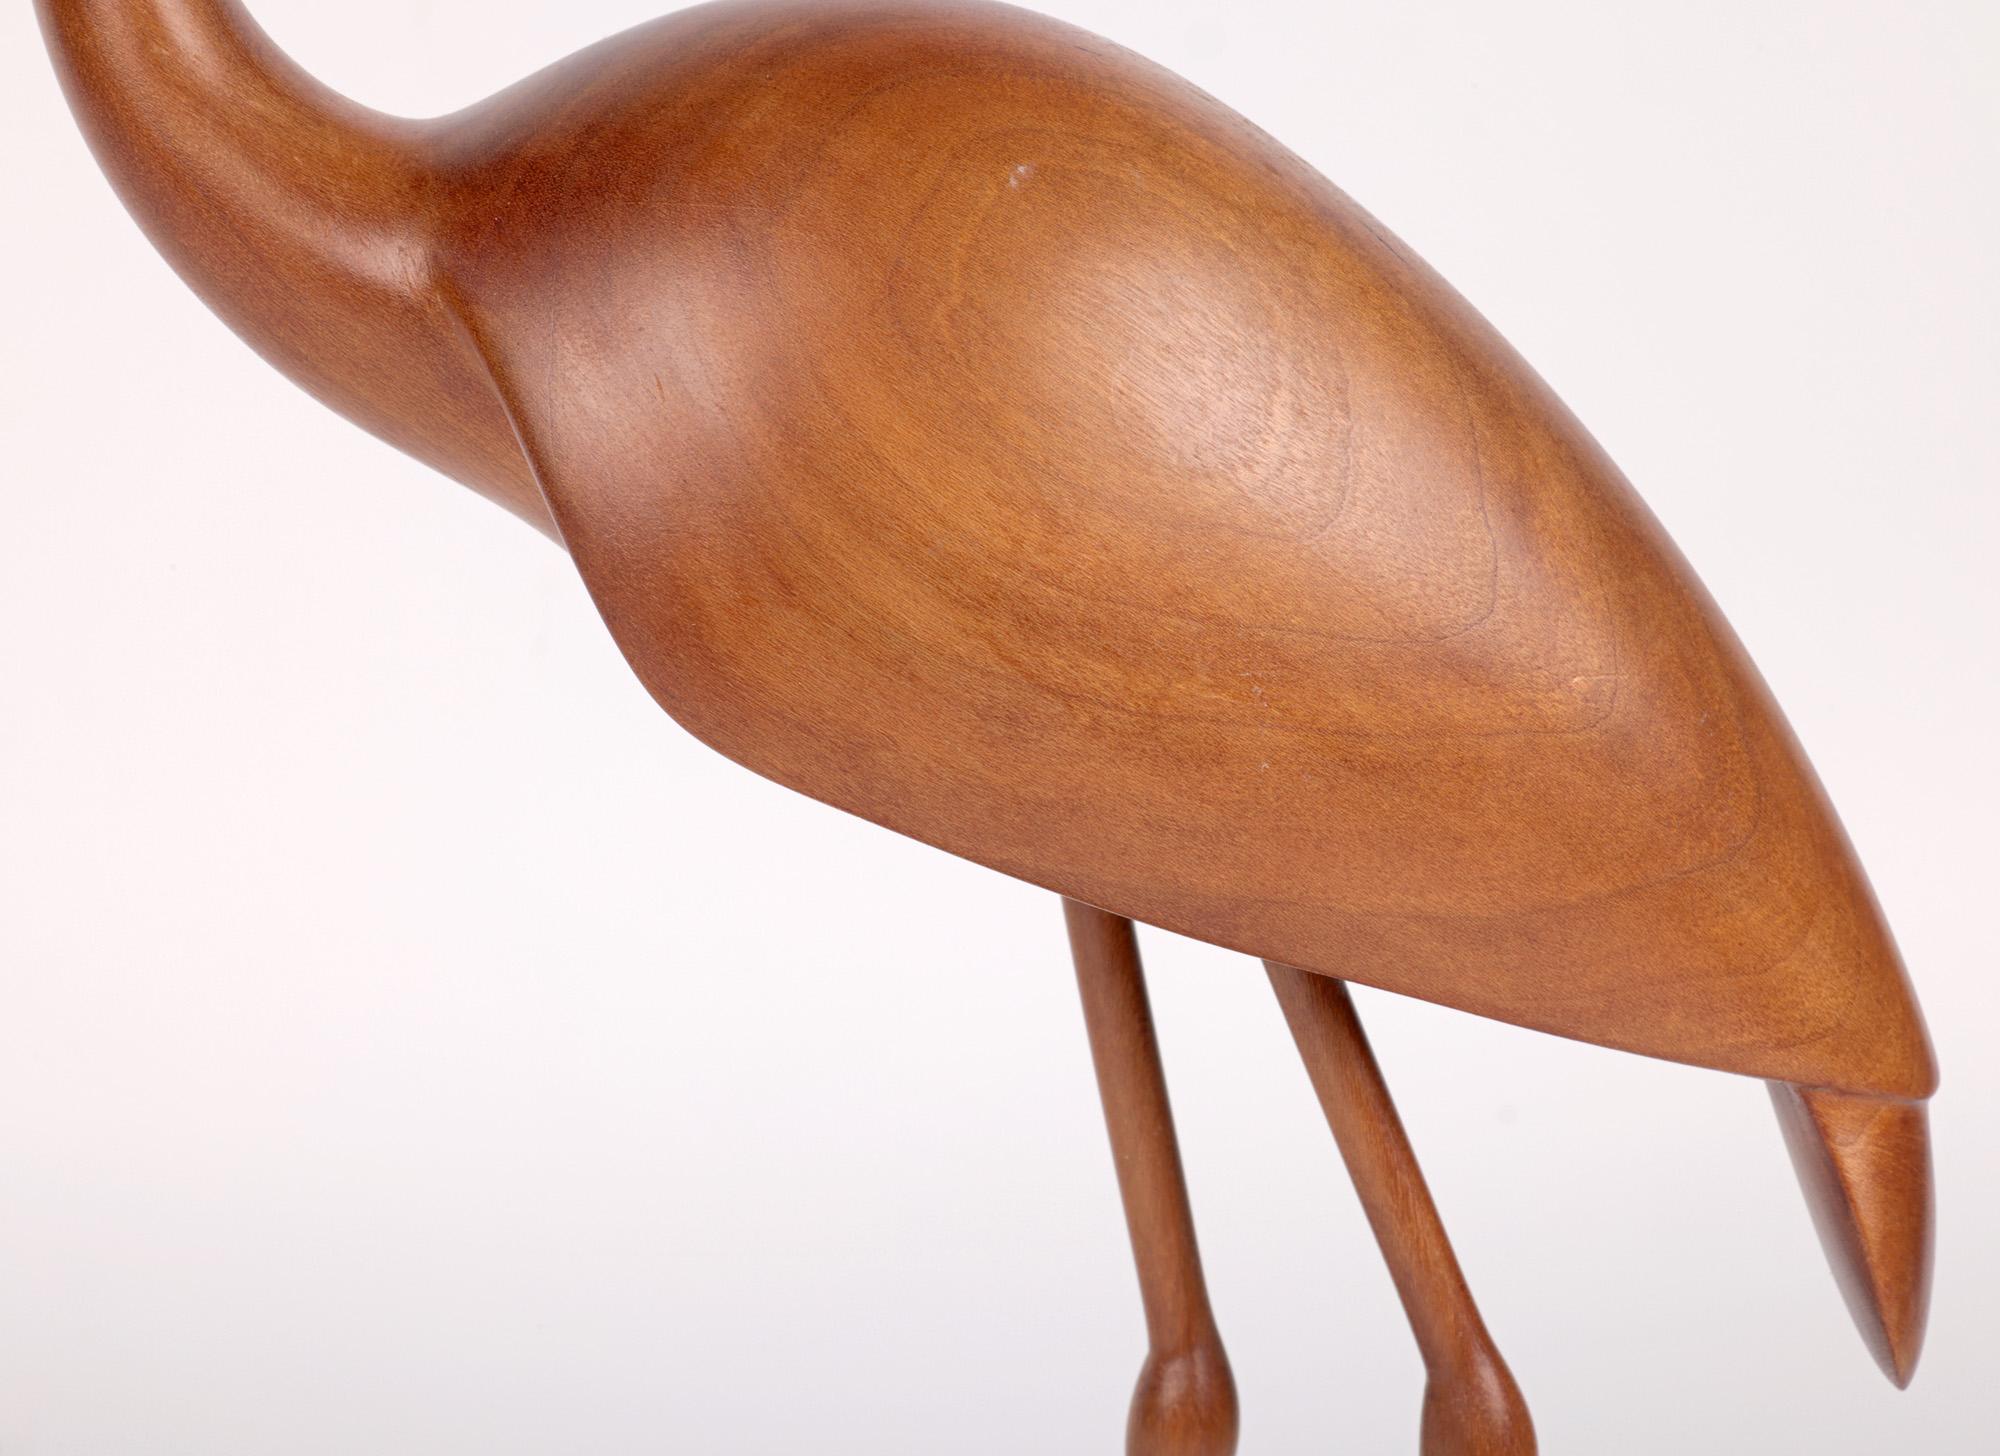 wooden heron statue